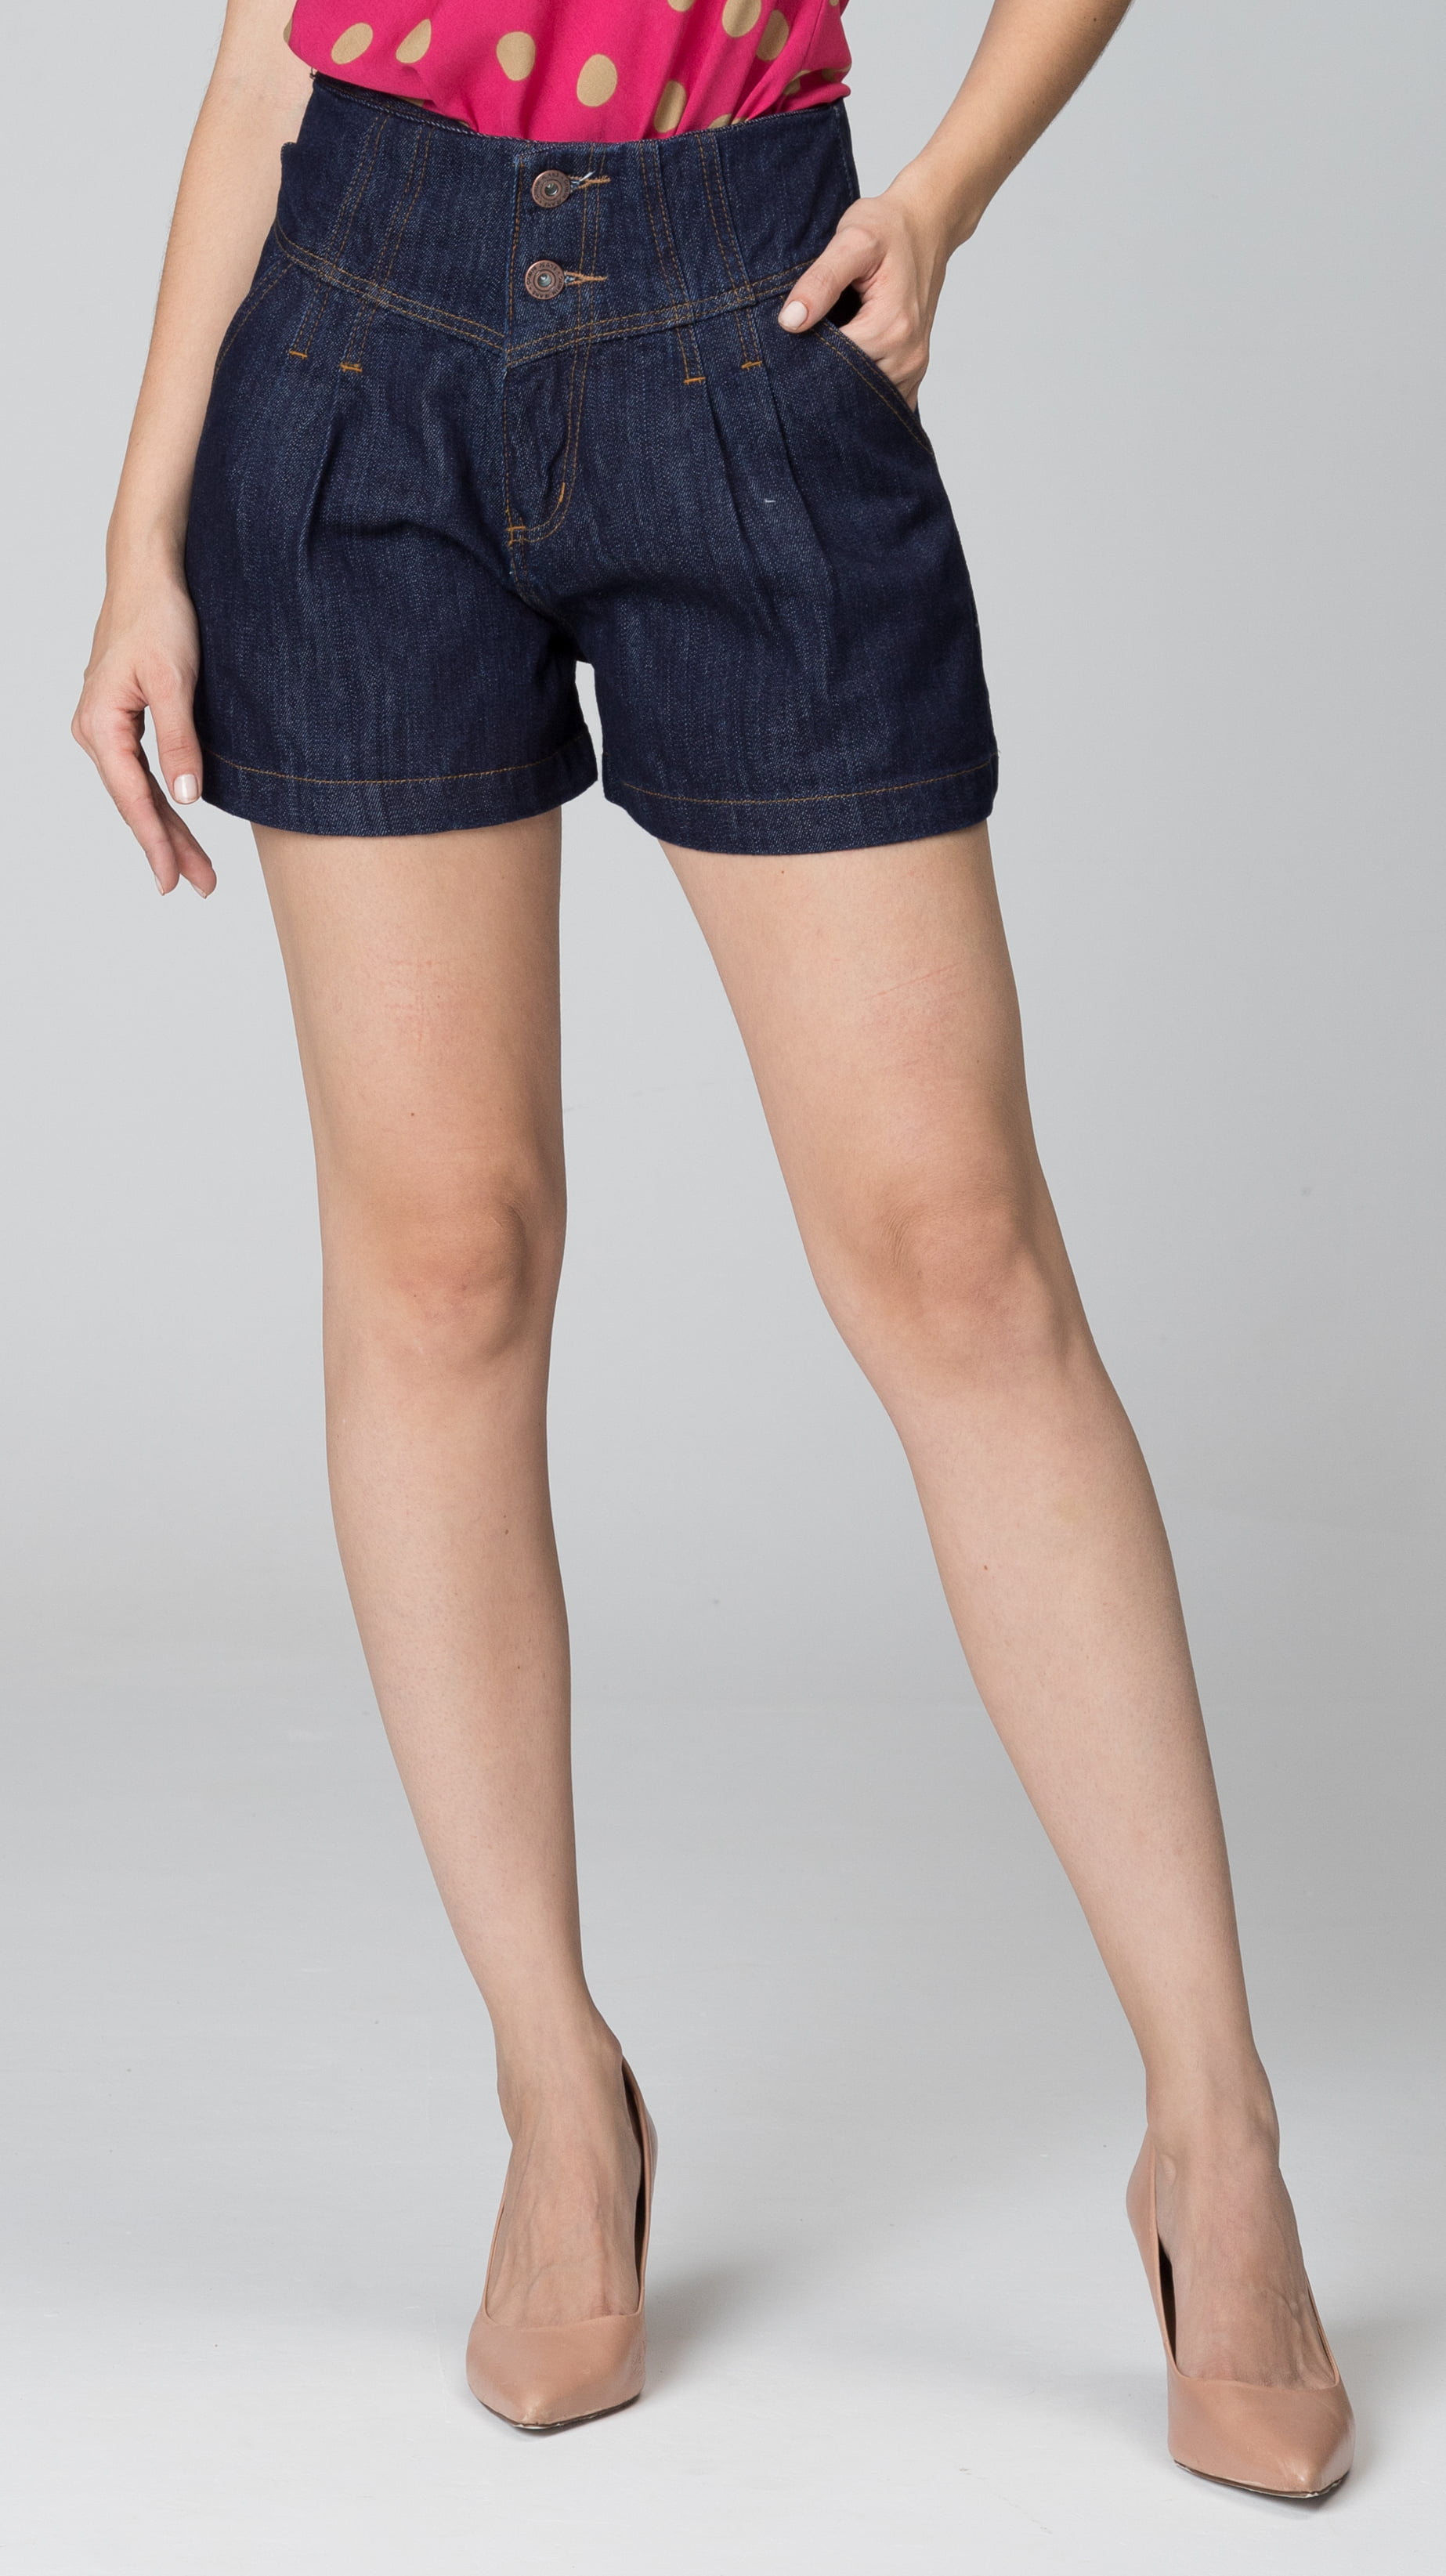 Shorts Jeans Feminino 